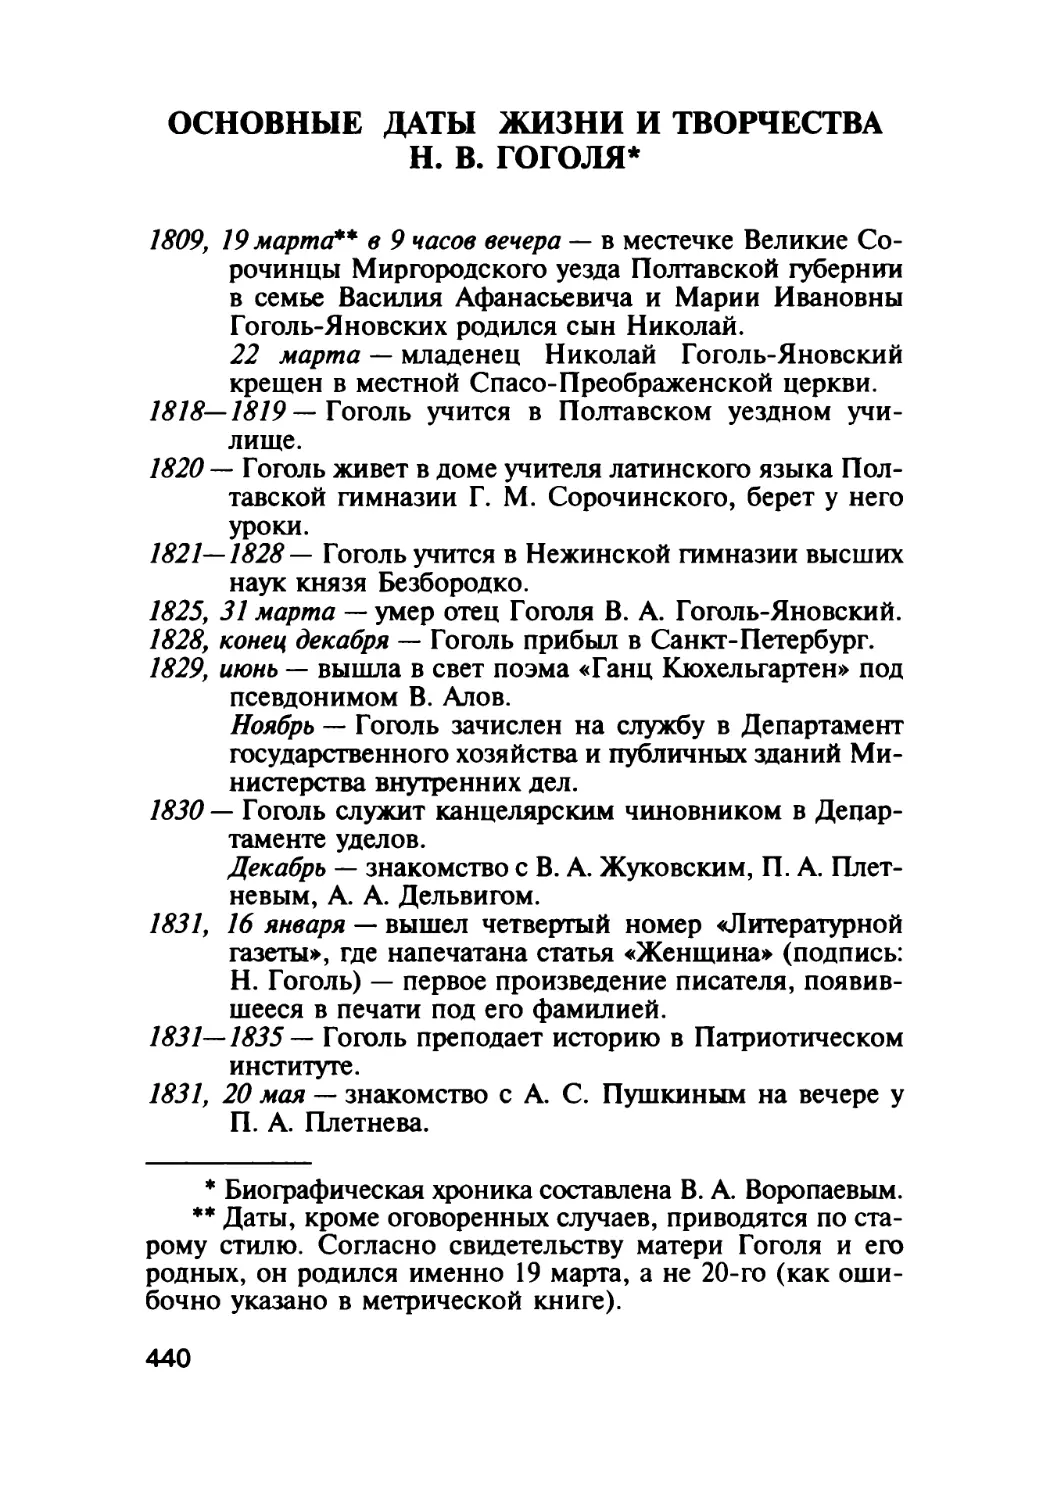 Основные даты жизни и творчества Н. В. Гоголя